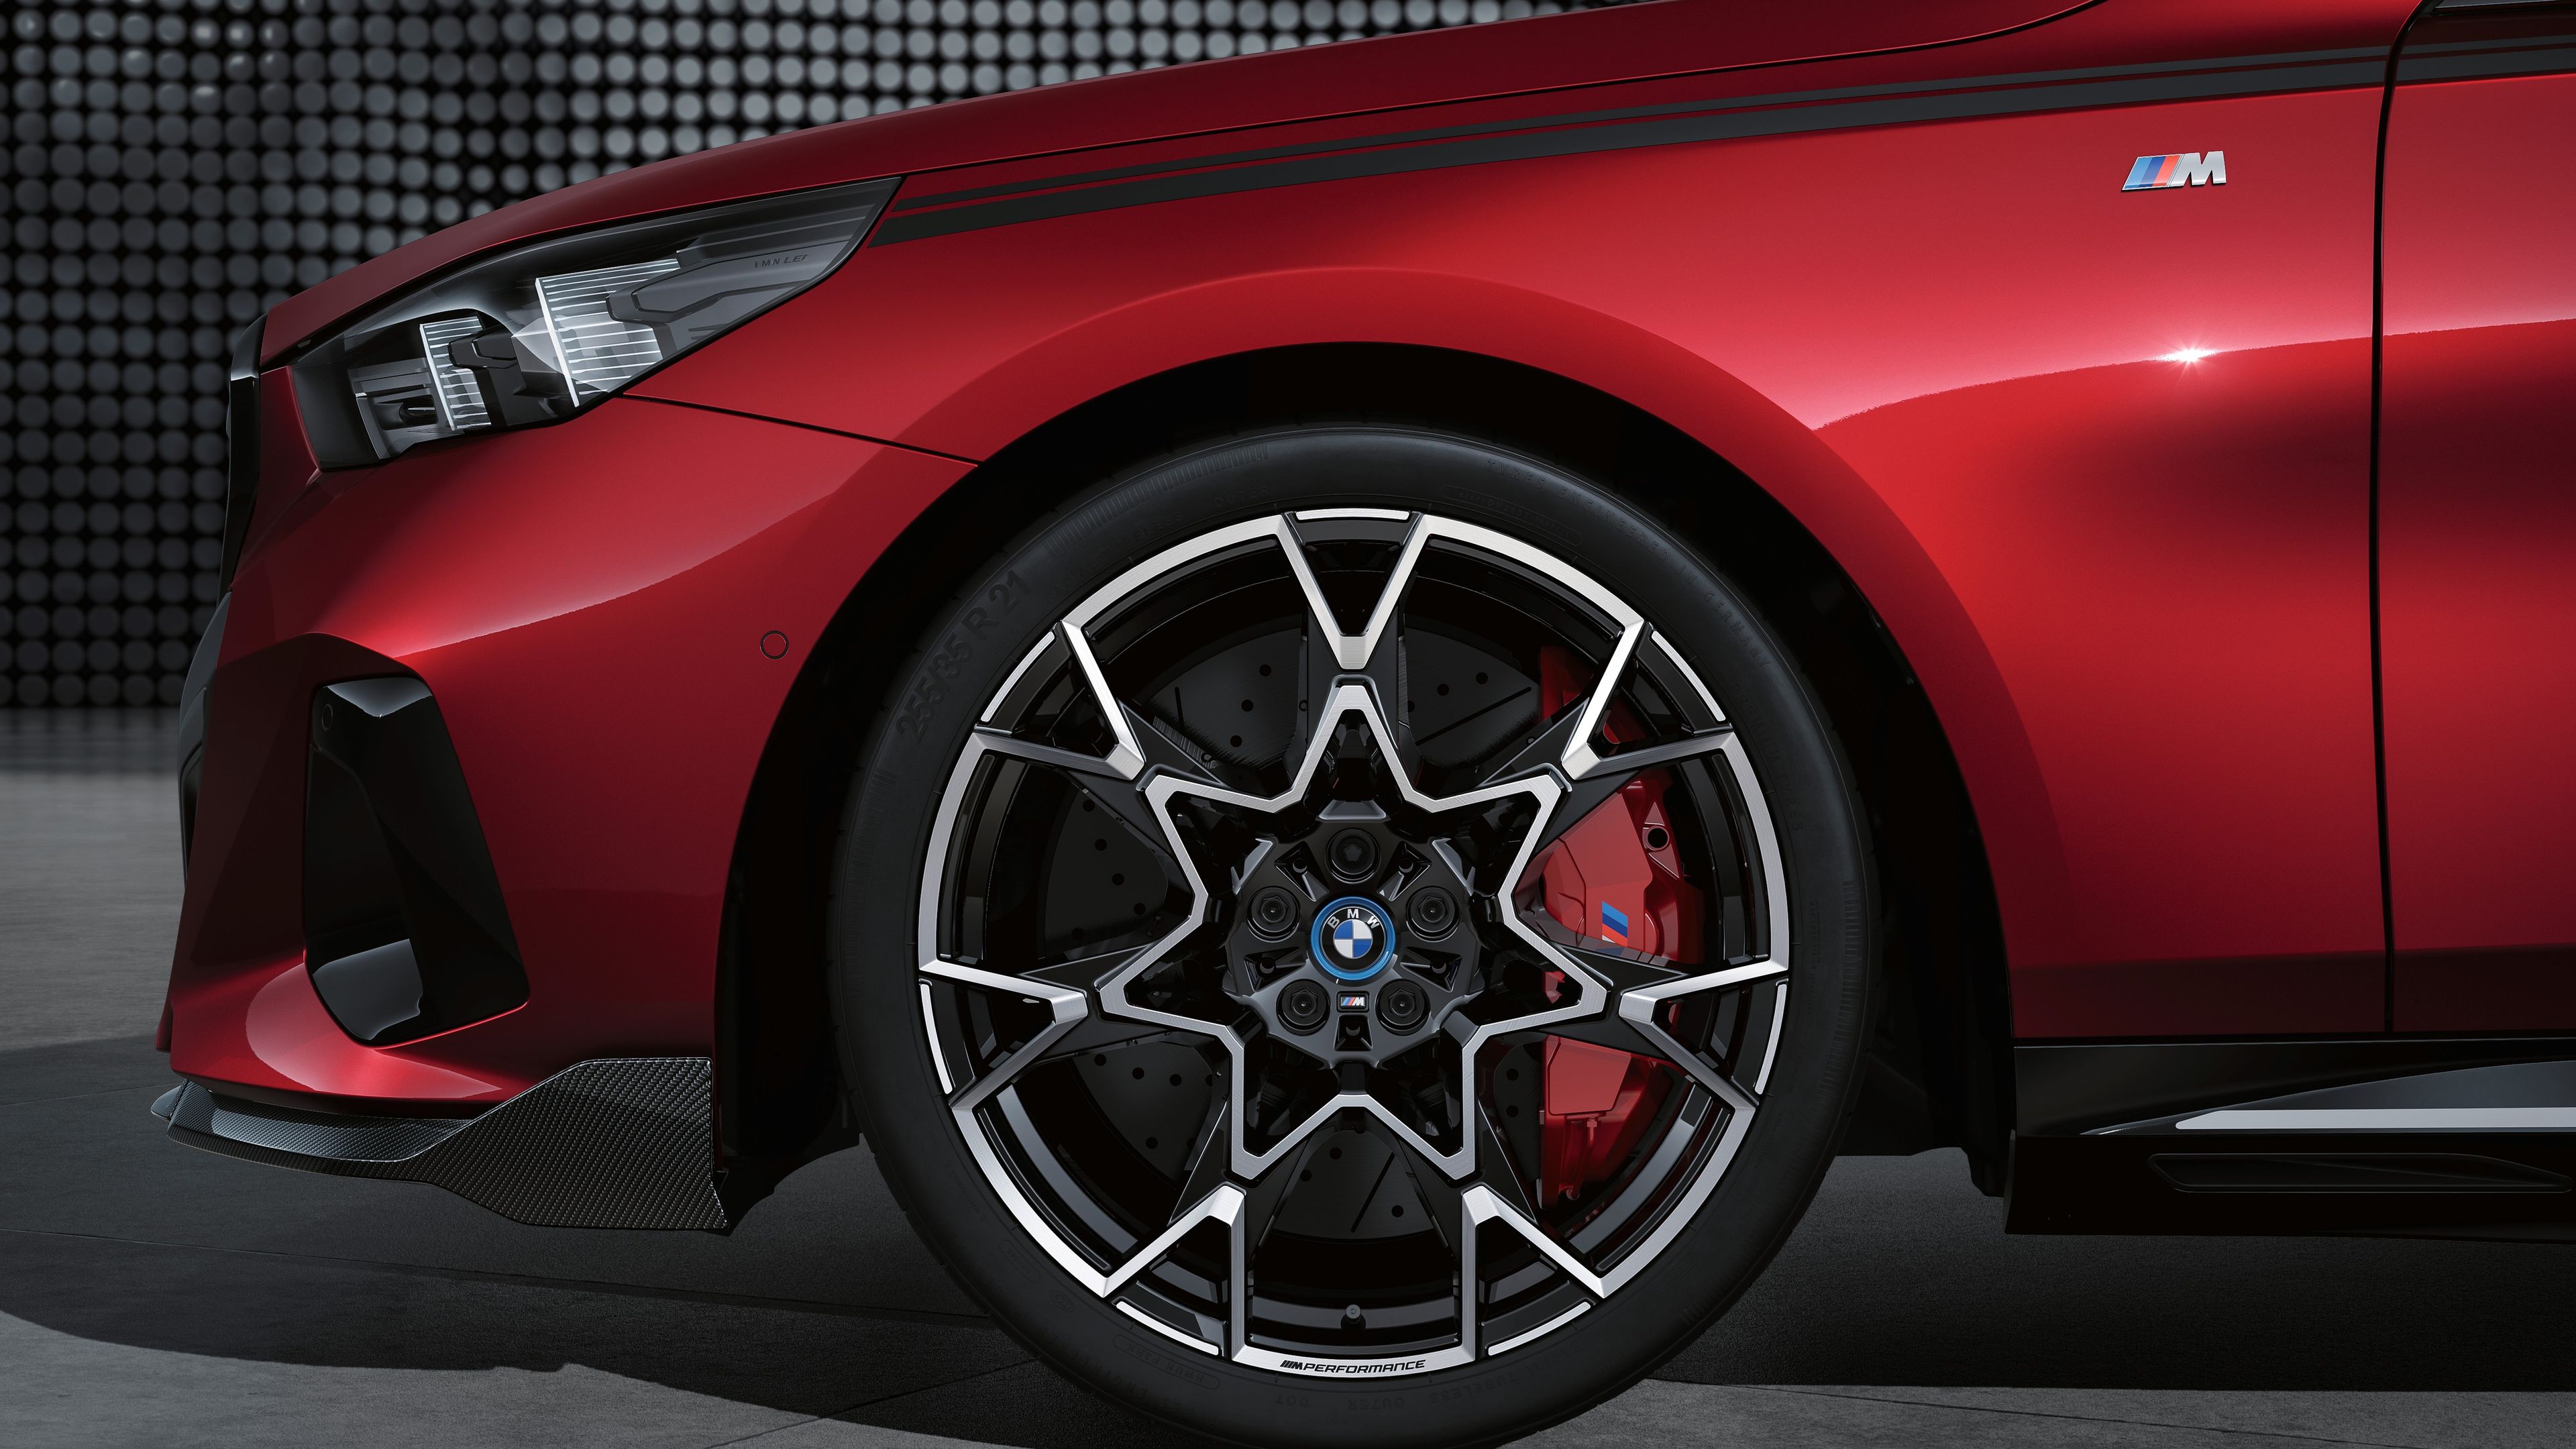 Accesorios M Performance para el BMW Serie 5 y BMW i5